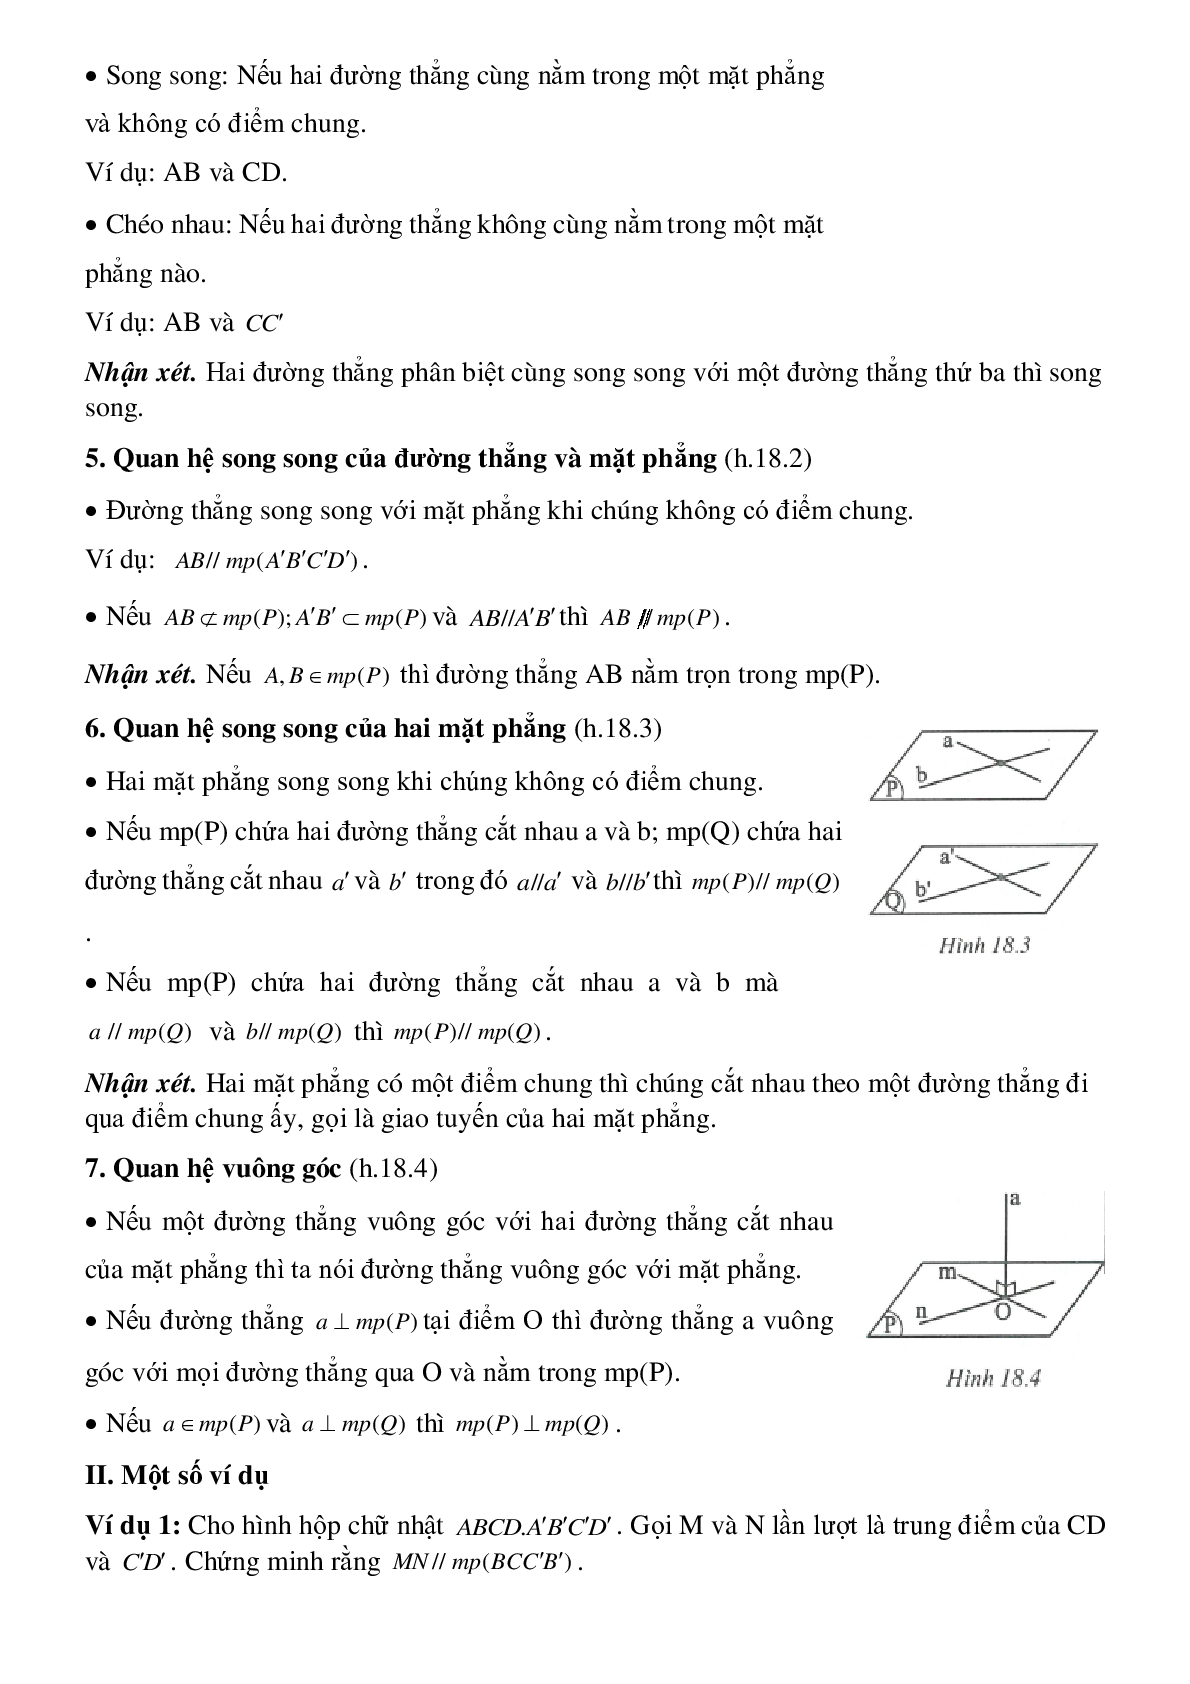 Hình hộp chữ nhật - Hình học toán 8 (trang 2)